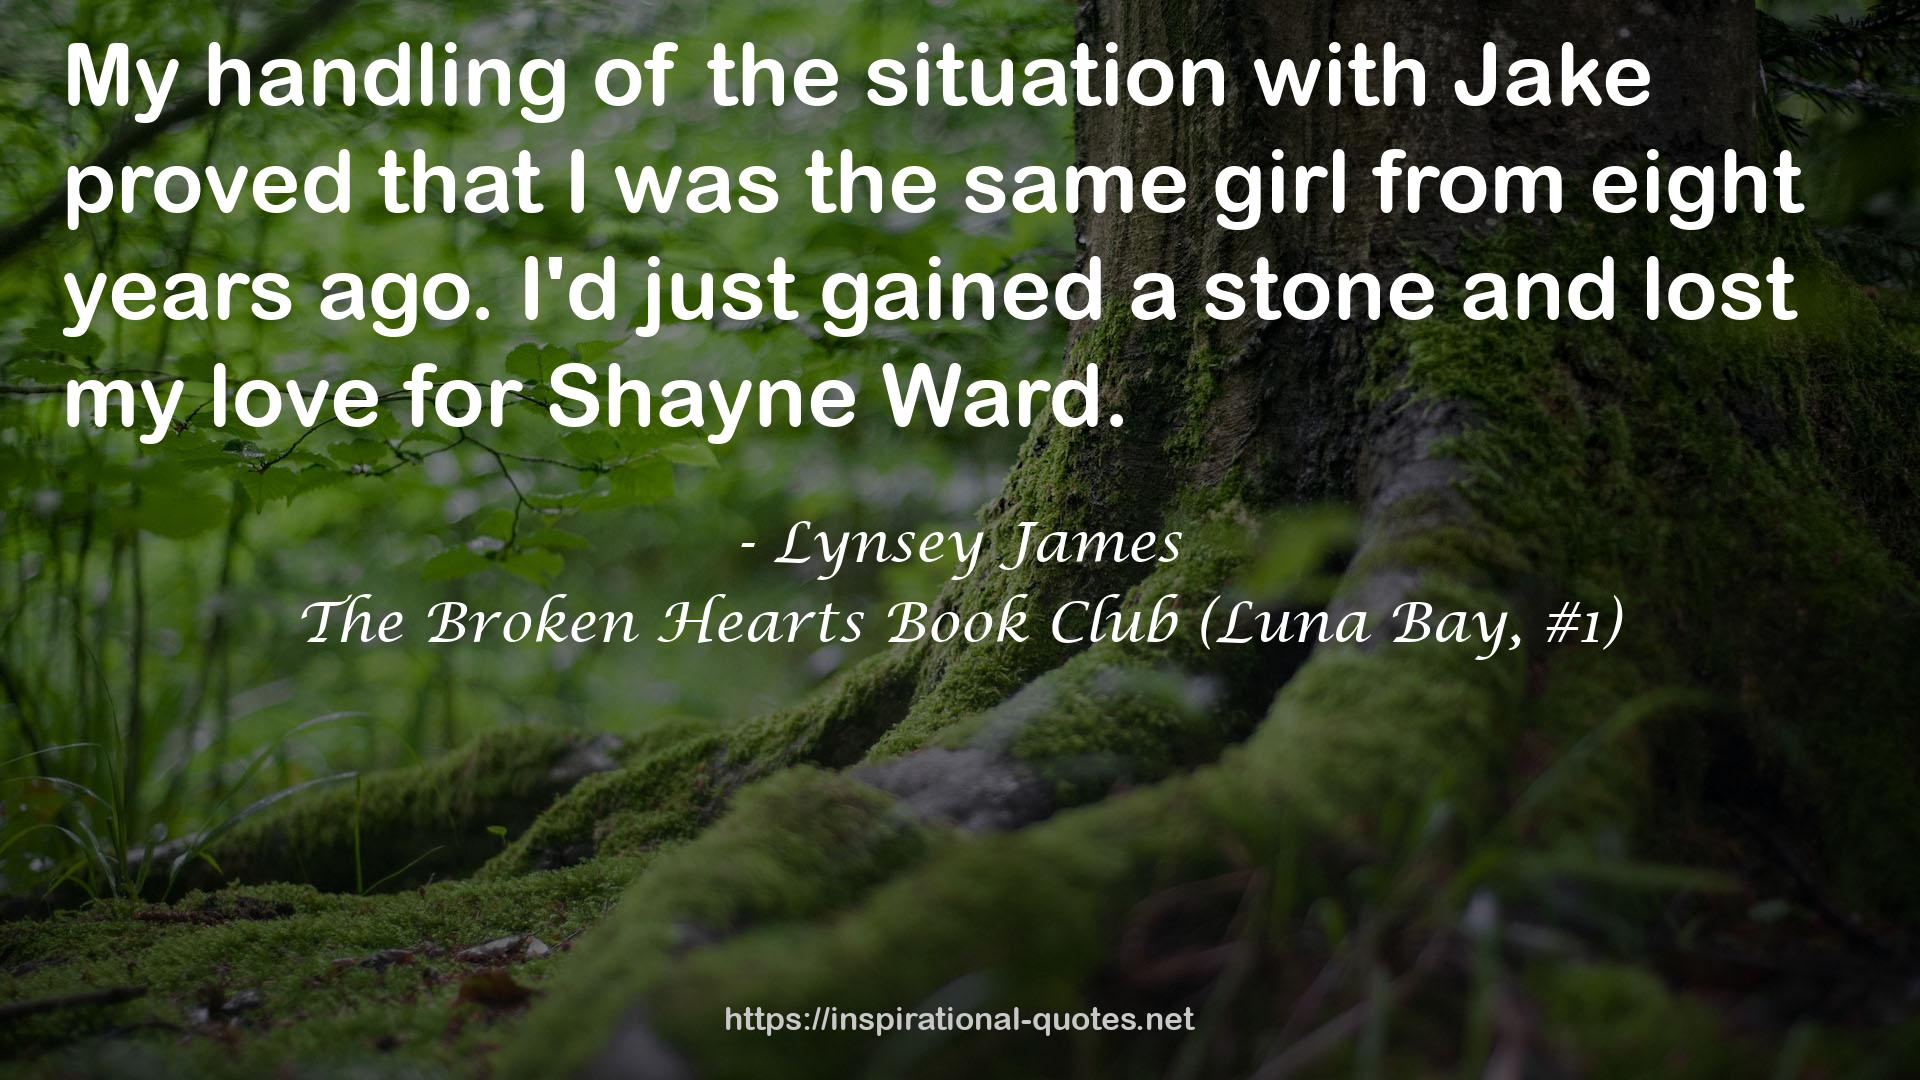 The Broken Hearts Book Club (Luna Bay, #1) QUOTES